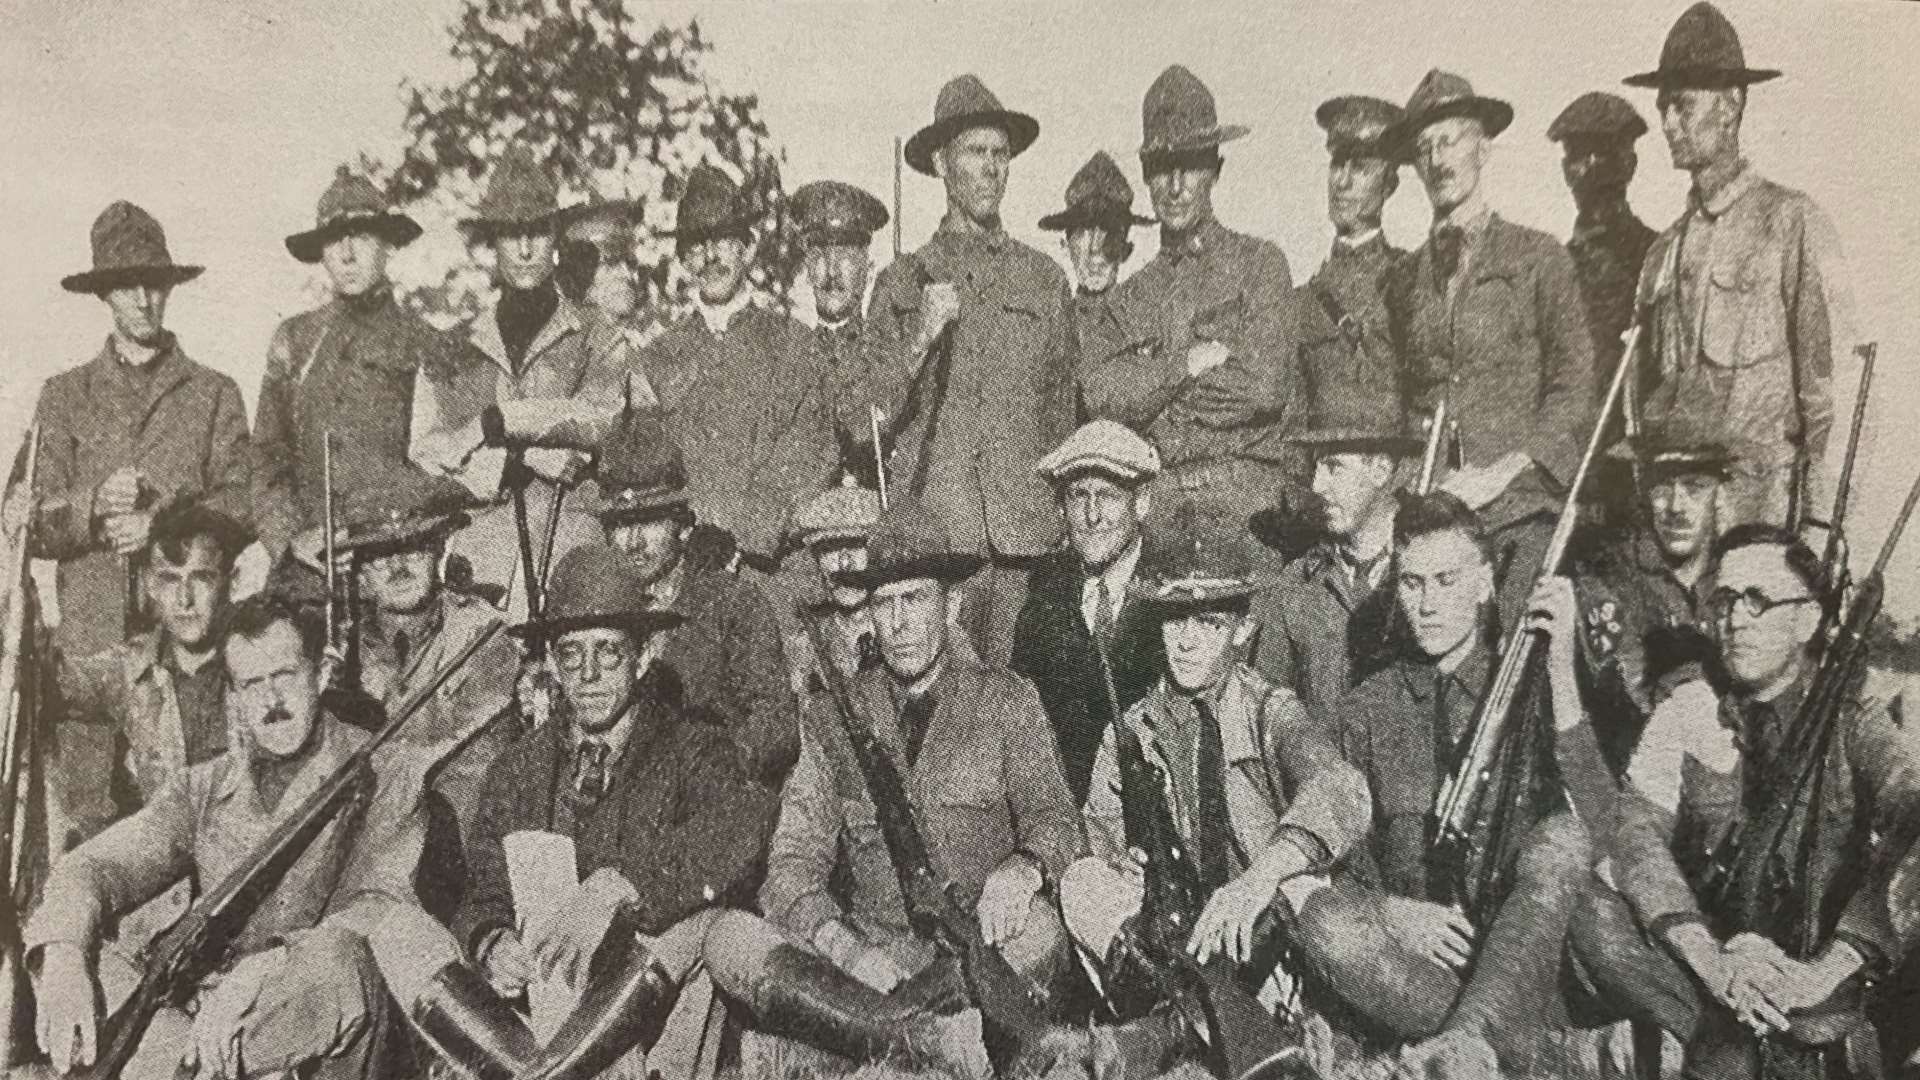 1922 U.S. Dewar team